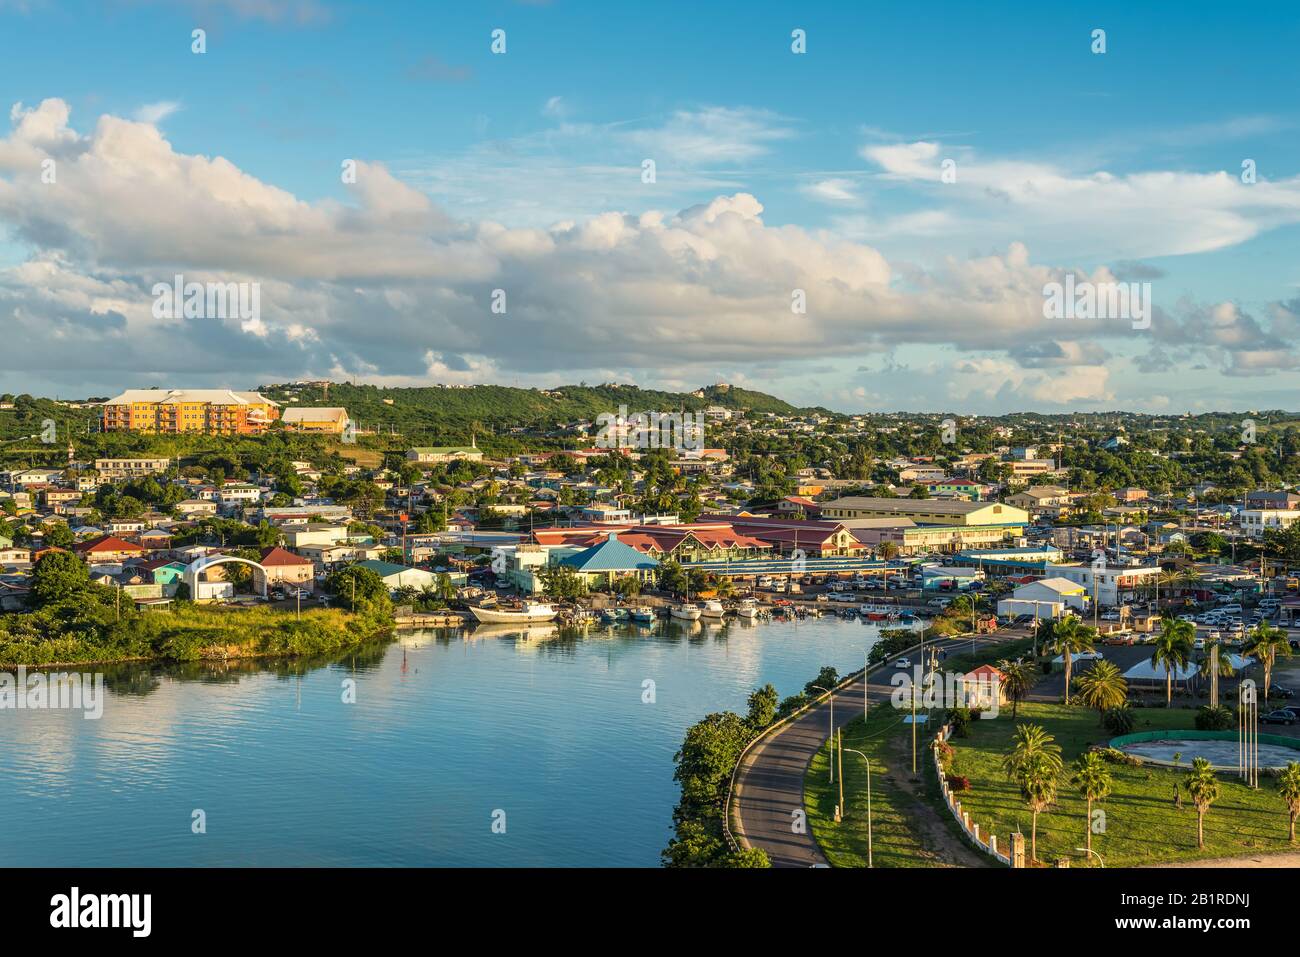 St John's, Antigua-et-Barbuda - le 19 décembre 2018 : paysage urbain de l'île St John's, Antigua, c'est le moment le plus crépuscule. Banque D'Images